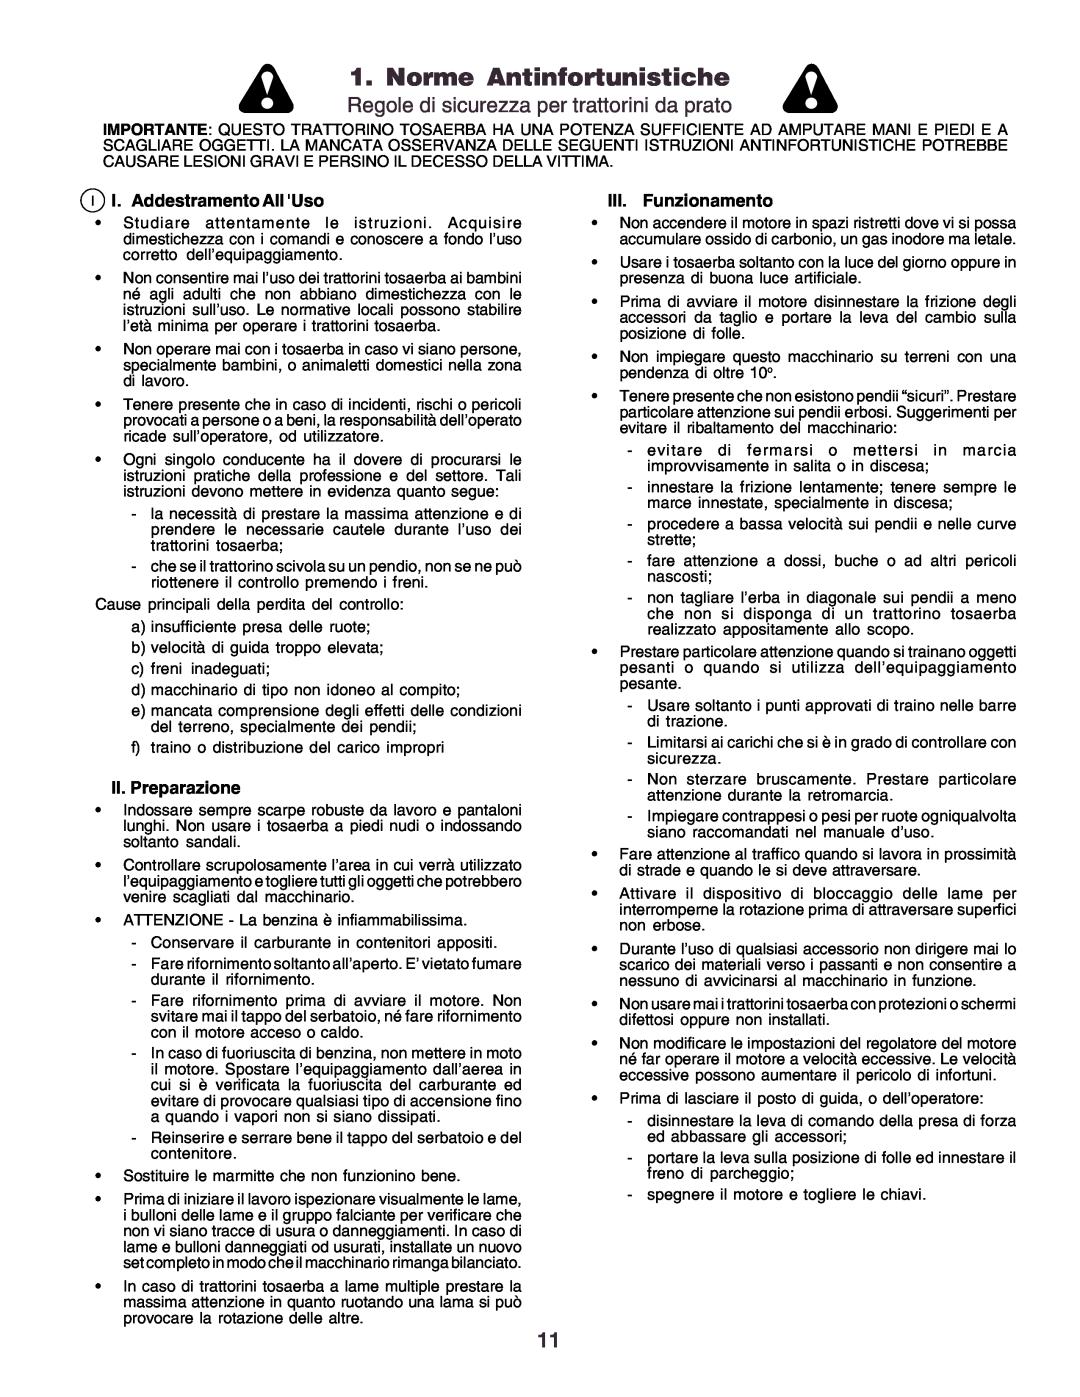 Husqvarna YTH170 Norme Antinfortunistiche, Regole di sicurezza per trattorini da prato, I I. Addestramento All Uso 